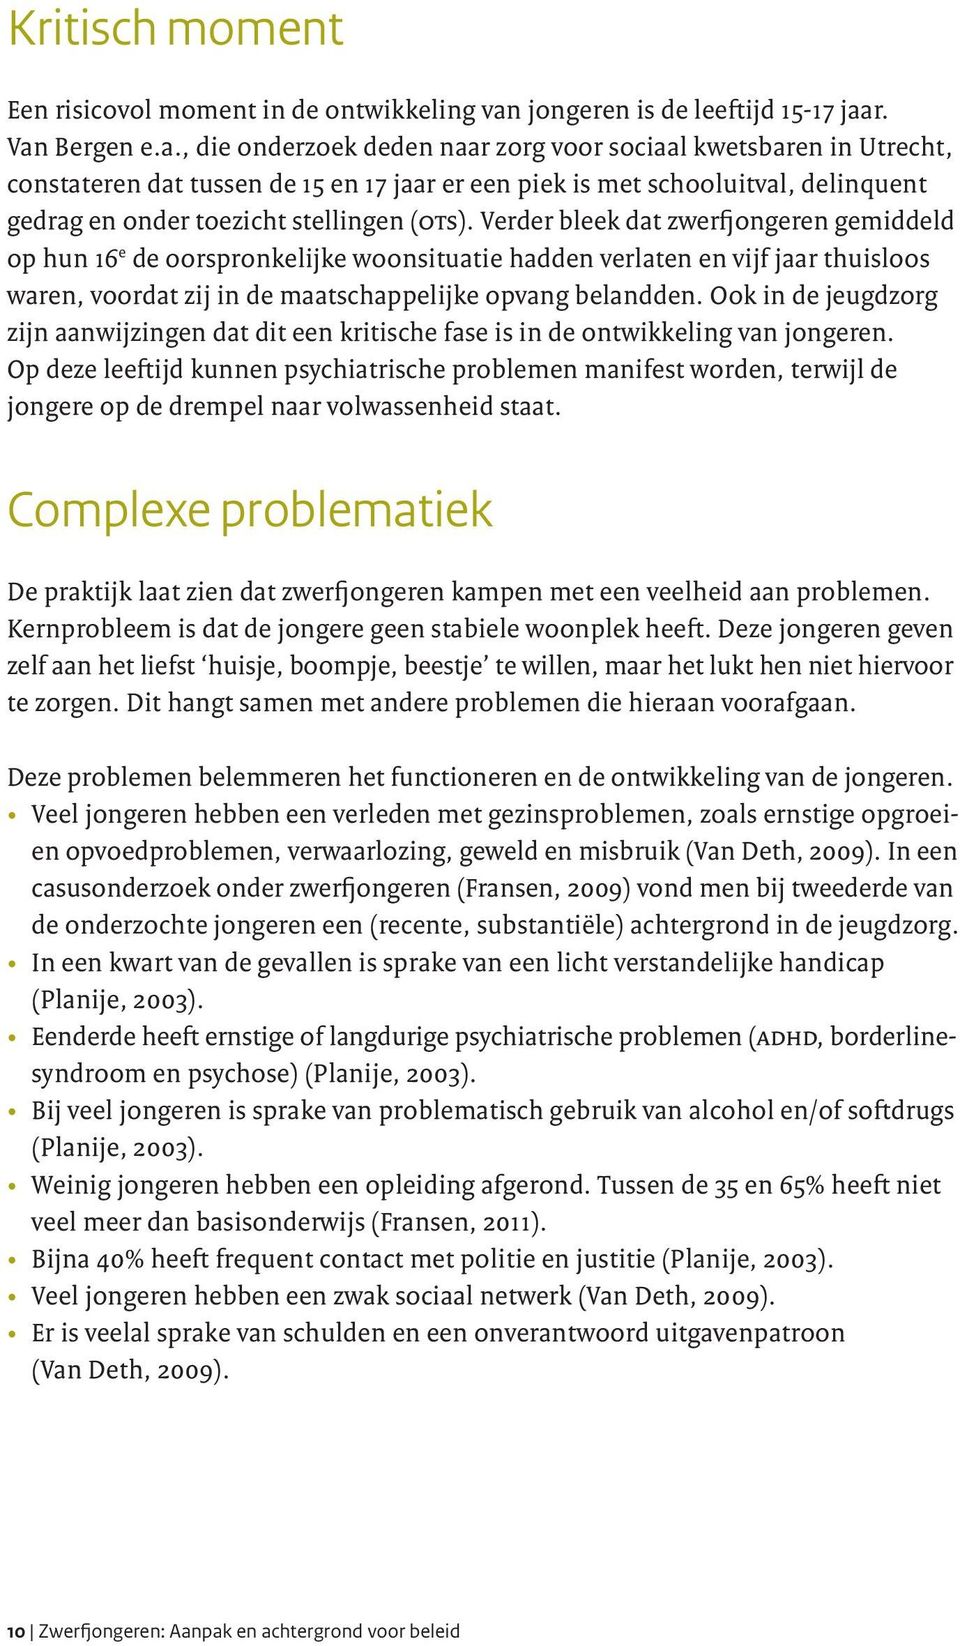 r. Van Bergen e.a., die onderzoek deden naar zorg voor sociaal kwetsbaren in Utrecht, constateren dat tussen de 15 en 17 jaar er een piek is met schooluitval, delinquent gedrag en onder toezicht stellingen (ots).